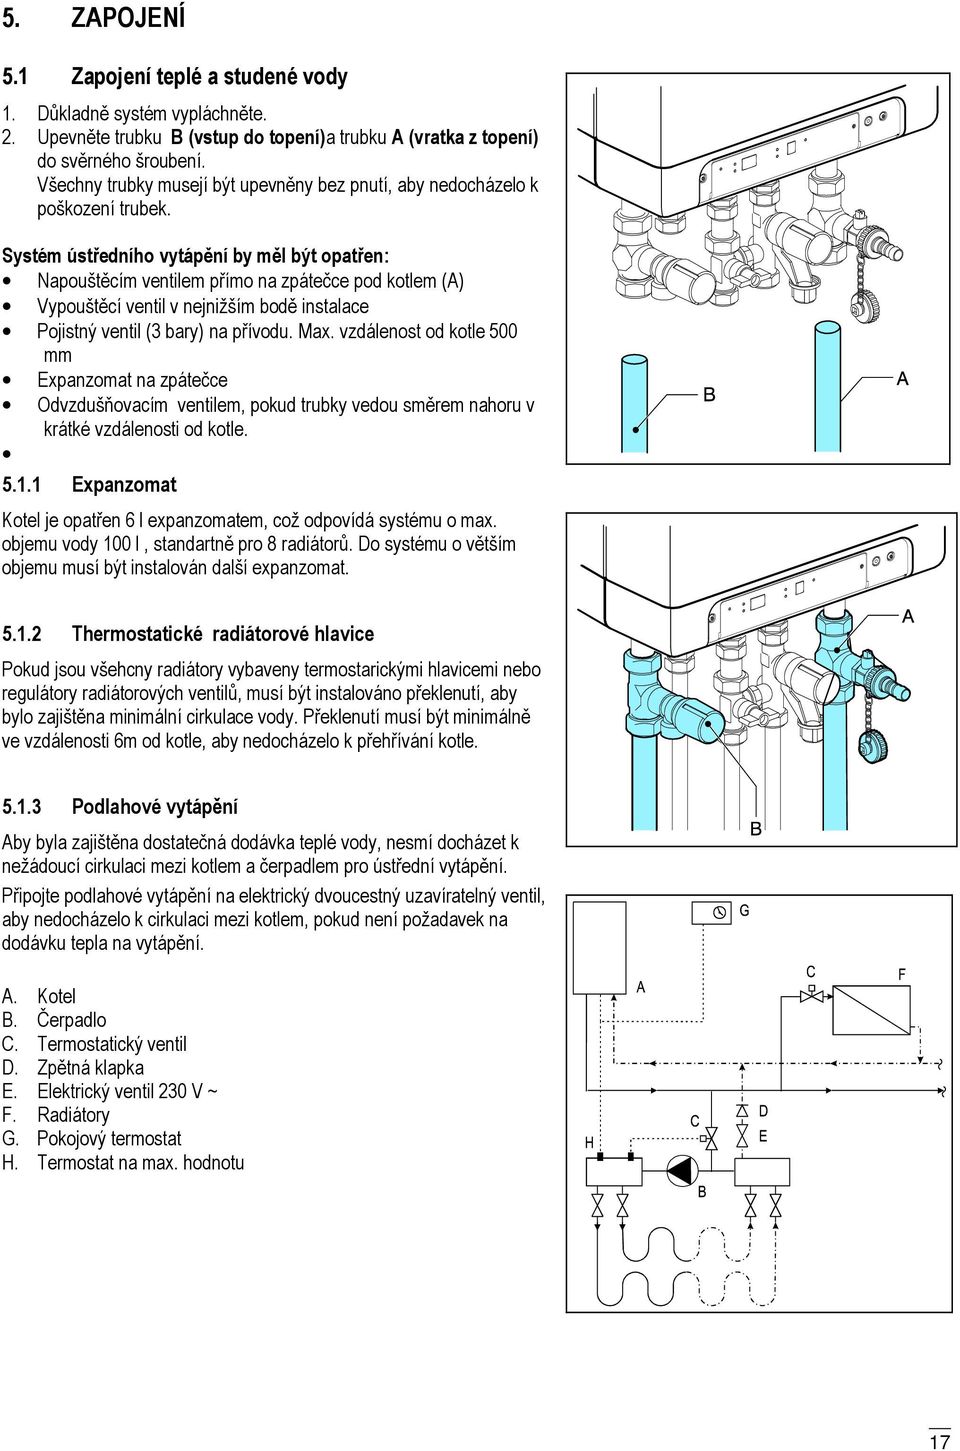 Systém ústředního vytápění by měl být opatřen: Napouštěcím ventilem přímo na zpátečce pod kotlem (A) Vypouštěcí ventil v nejnižším bodě instalace Pojistný ventil (3 bary) na přívodu. Max.